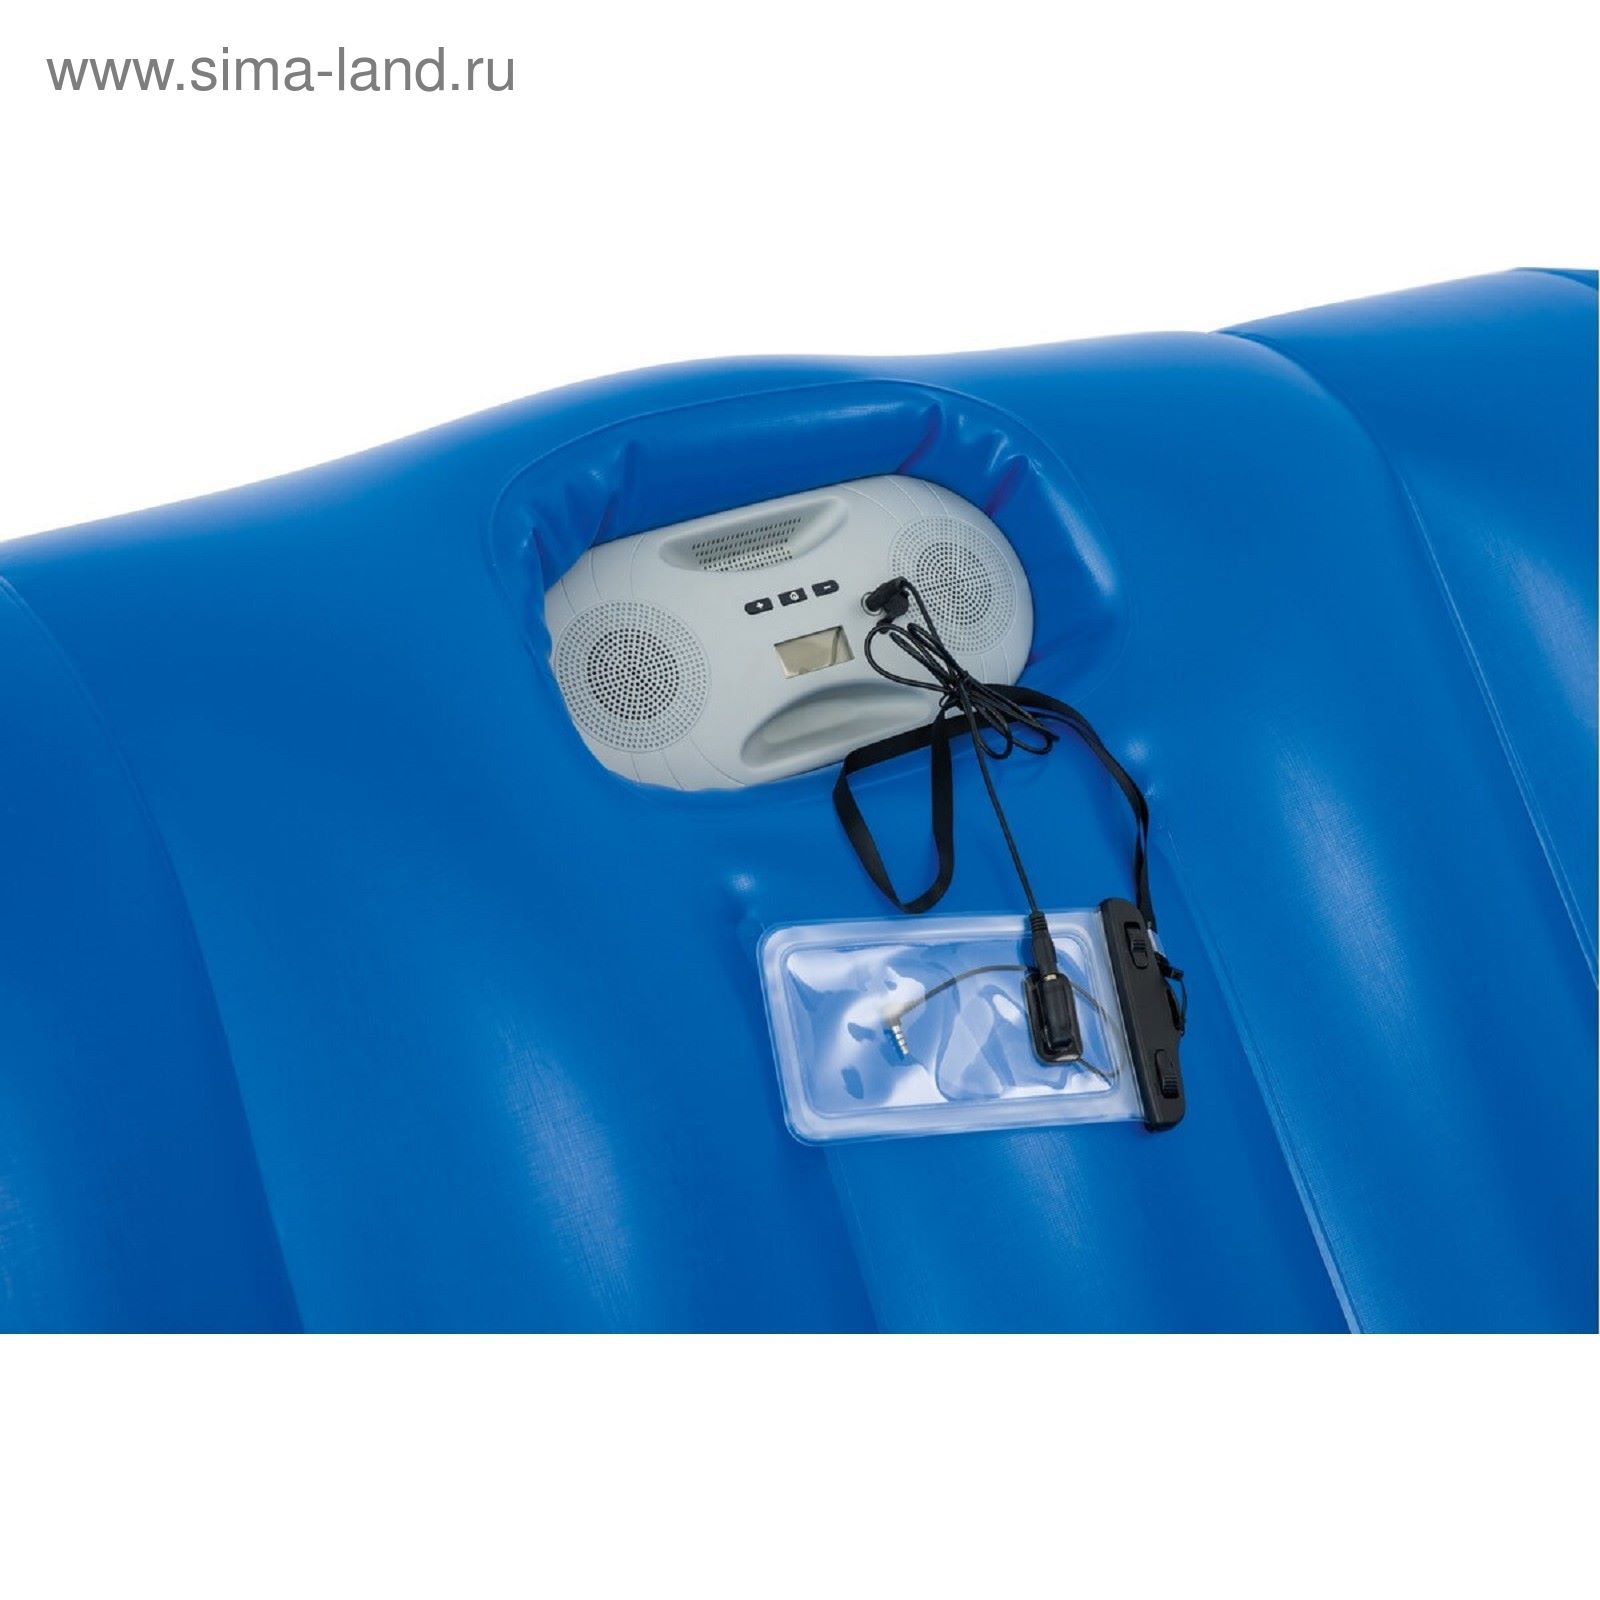 Беседка-плот для отдыха на воде, с аудиоколонкой, для 4 человек 272х196 см (43134)